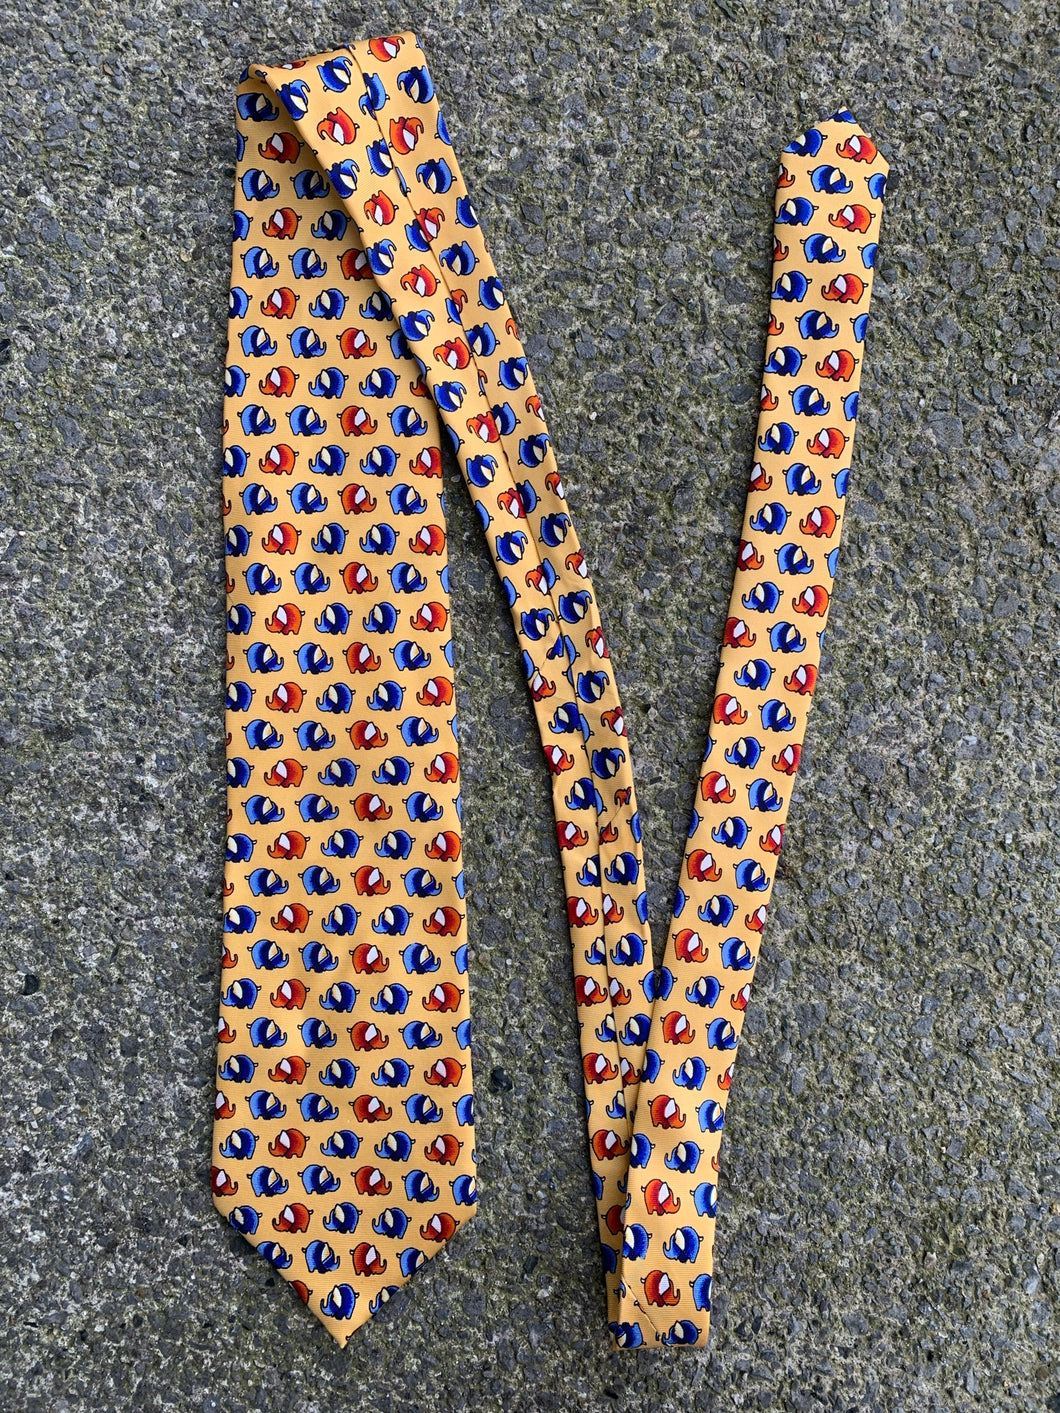 Elephants tie